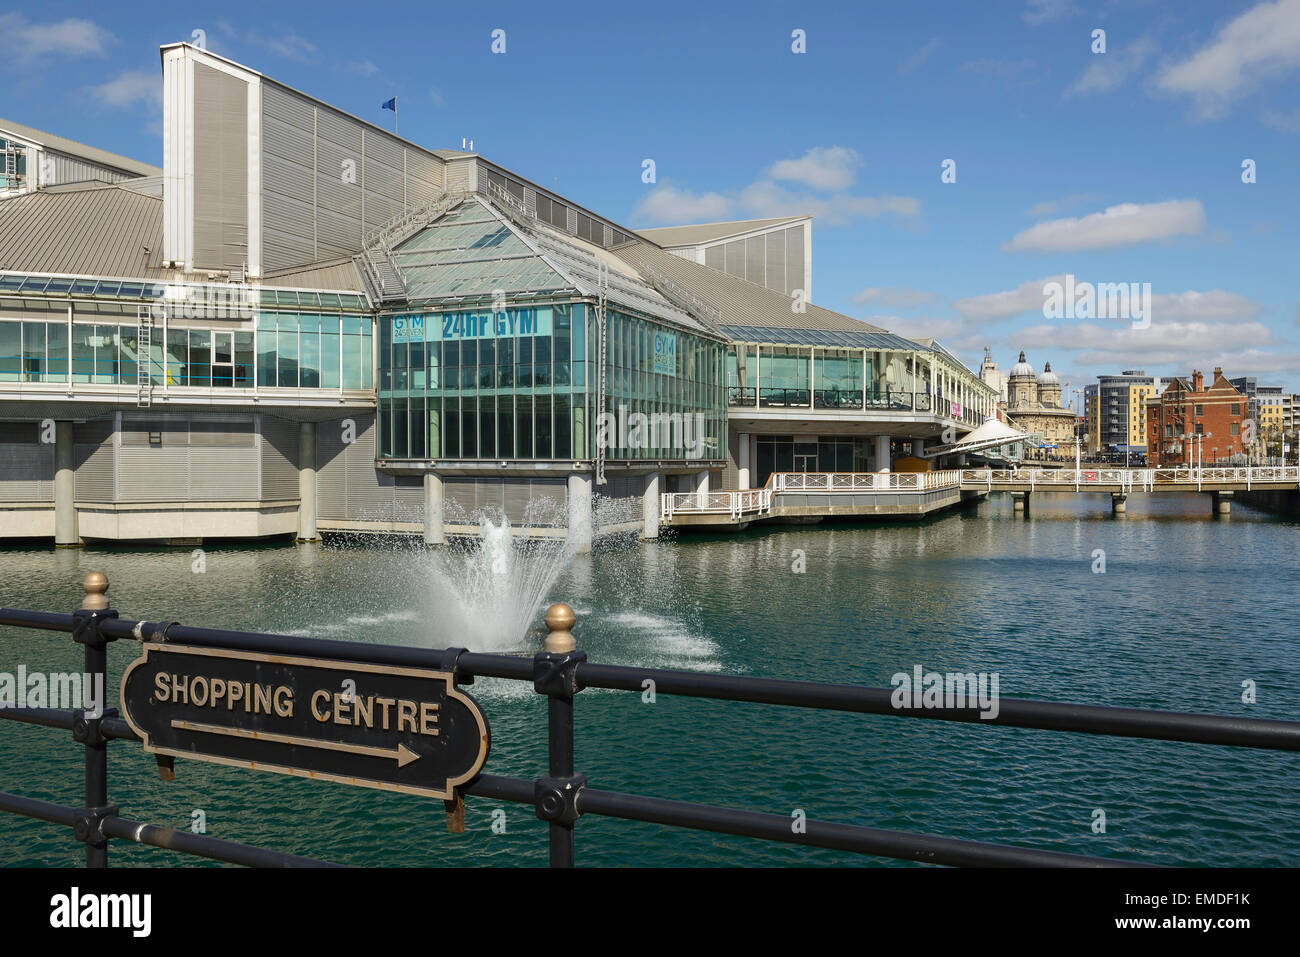 Il Princes Quay Shopping Center affacciato su Princes dock in Hull City Centre Regno Unito Foto Stock